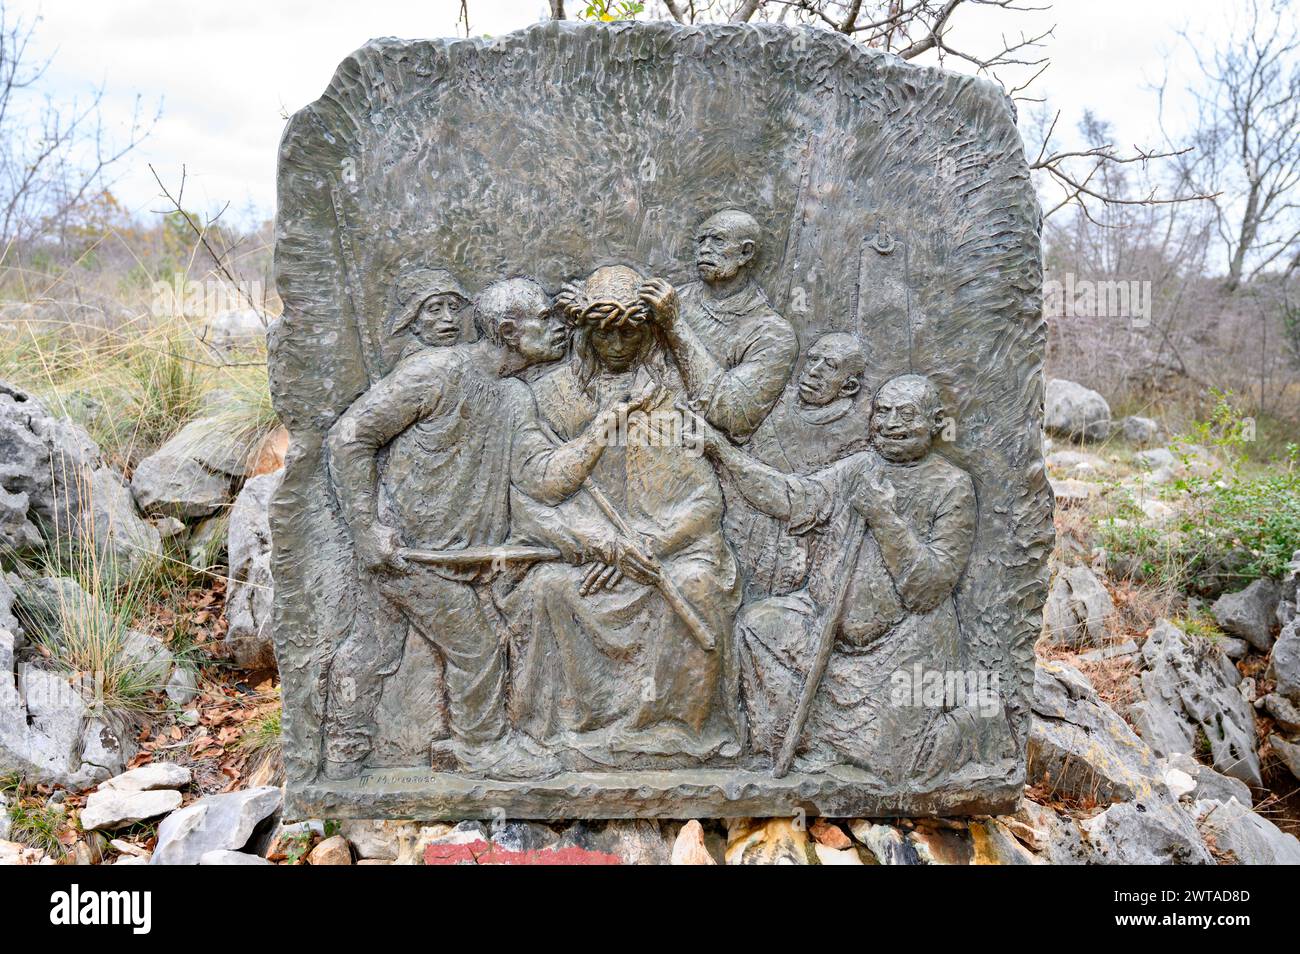 Le couronnement aux épines - troisième mystère douloureux du Rosaire. Sculpture en relief sur le mont Podbrdo (la colline des apparitions) à Medjugorje. Banque D'Images